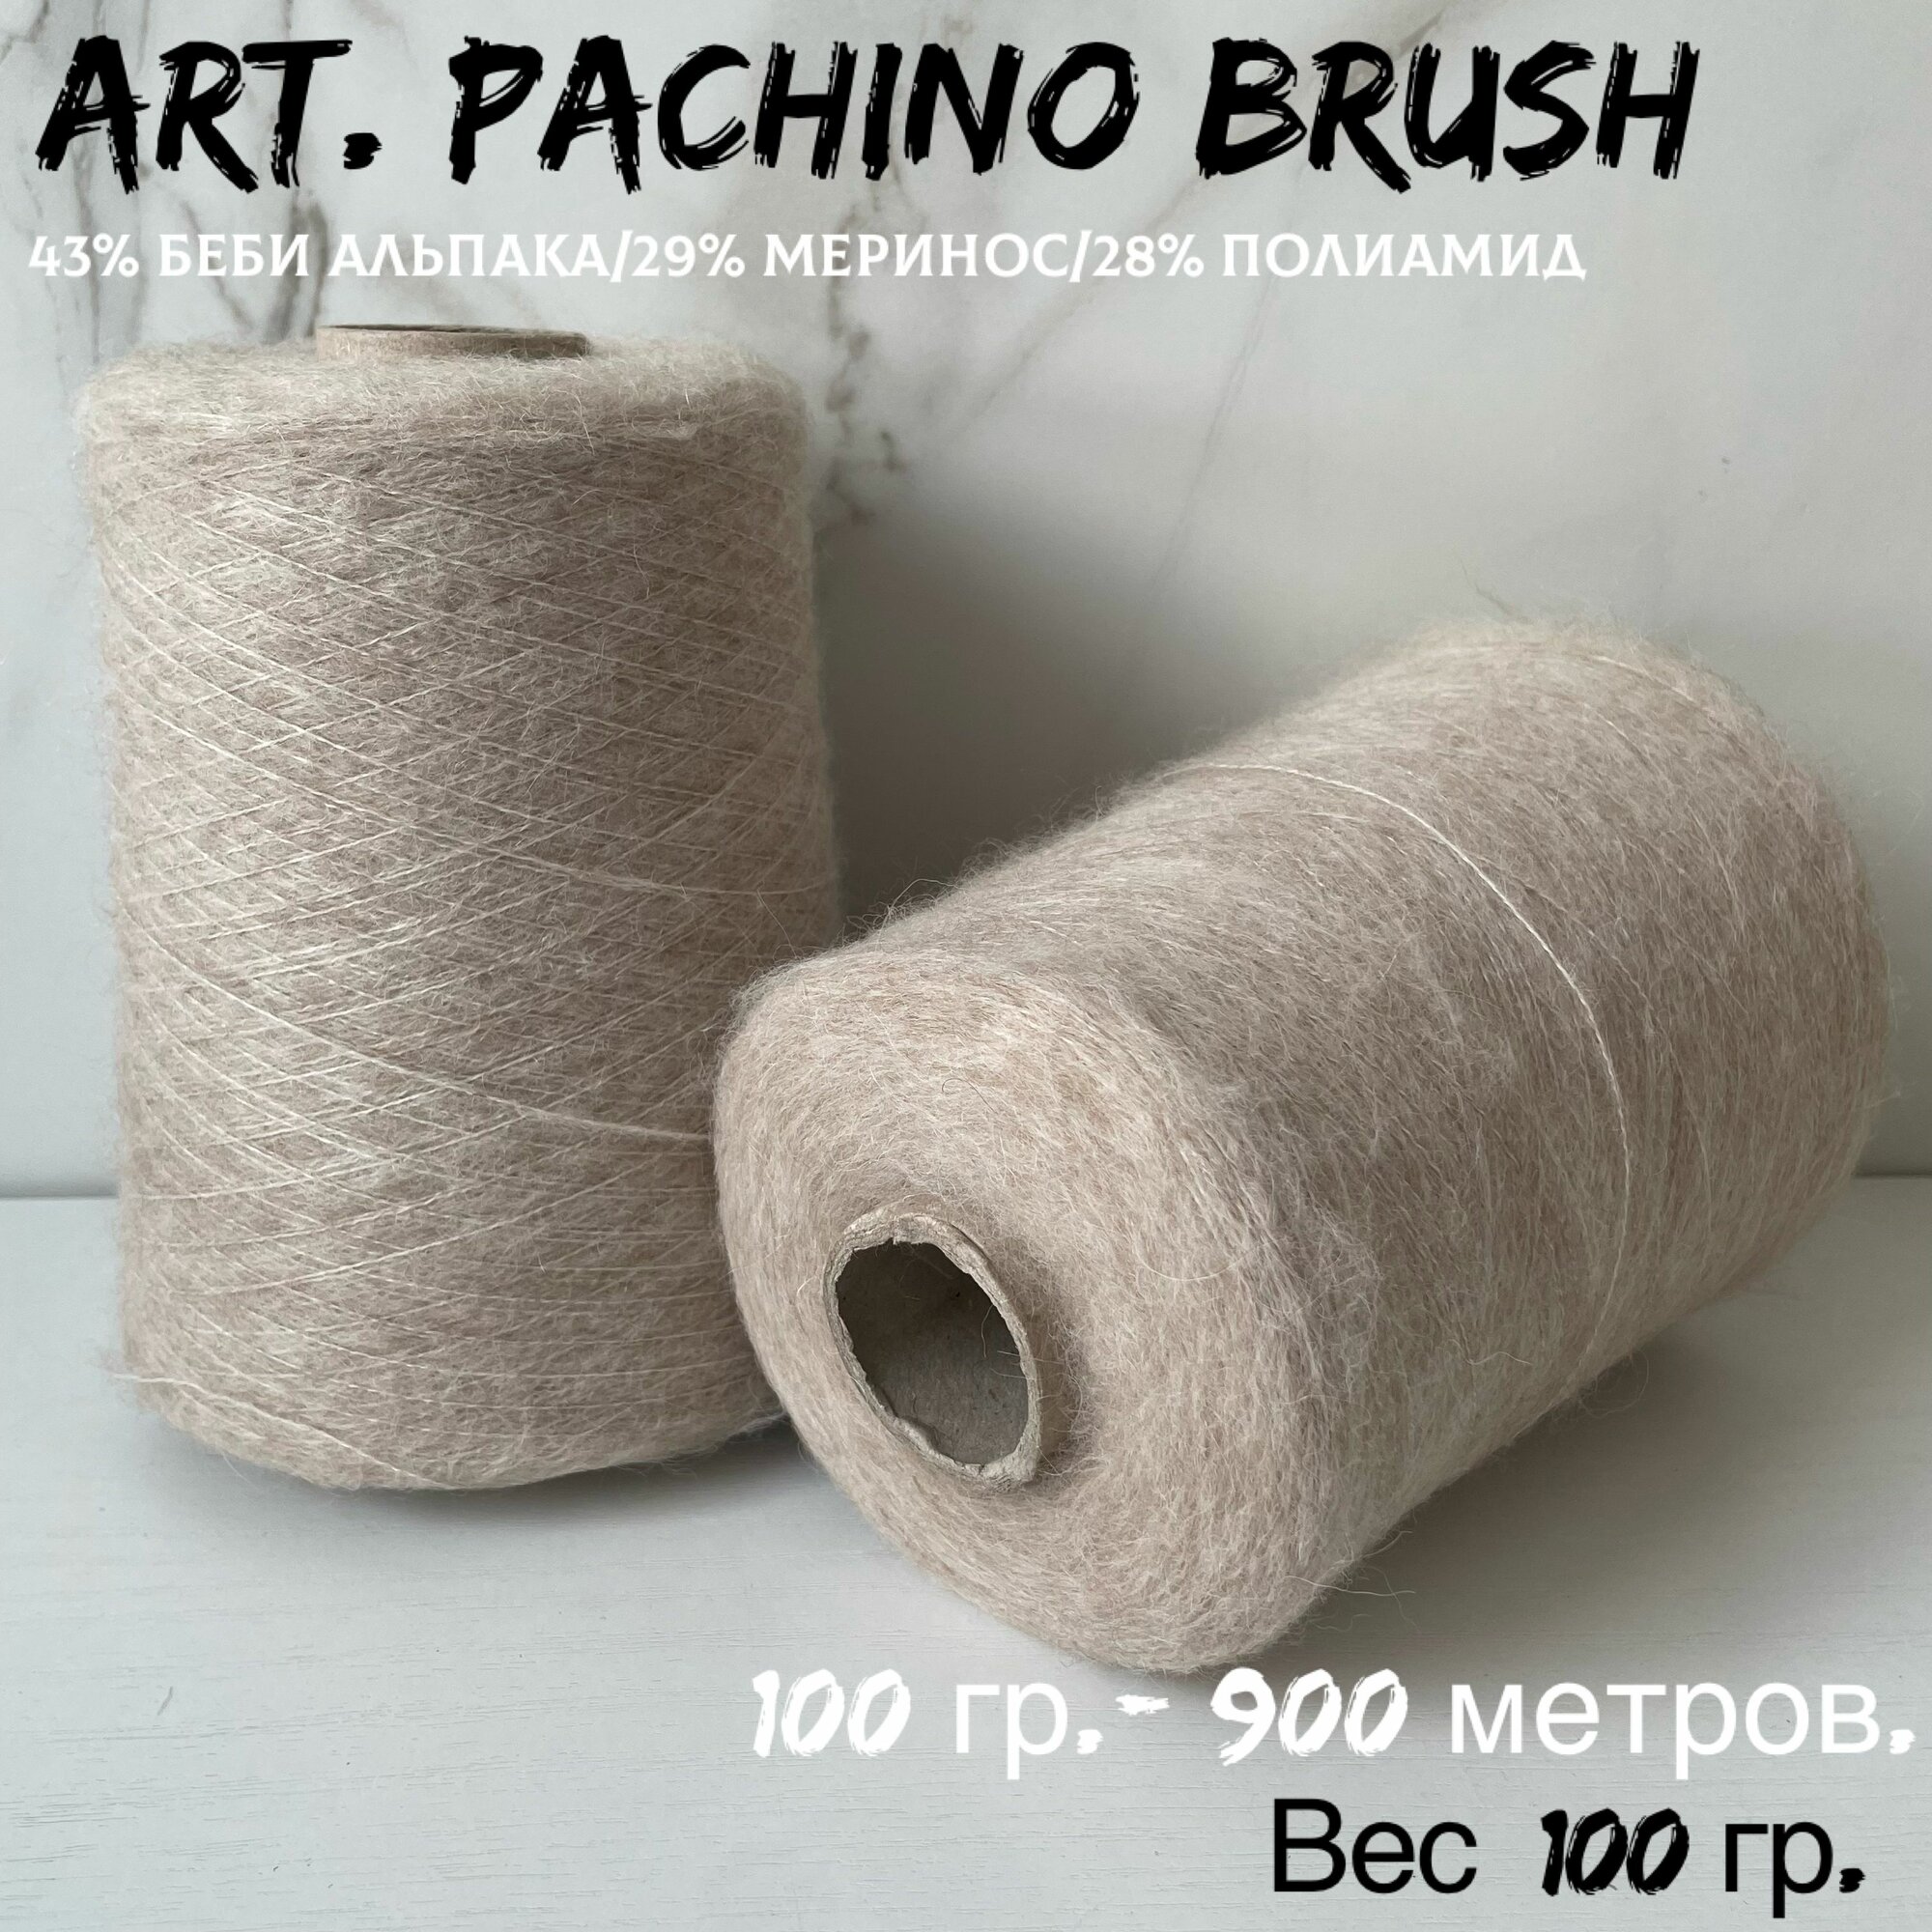 Итальянская бобинная пряжа для вязания art. Pachino brush беби альпака/меринос, 100 грамм